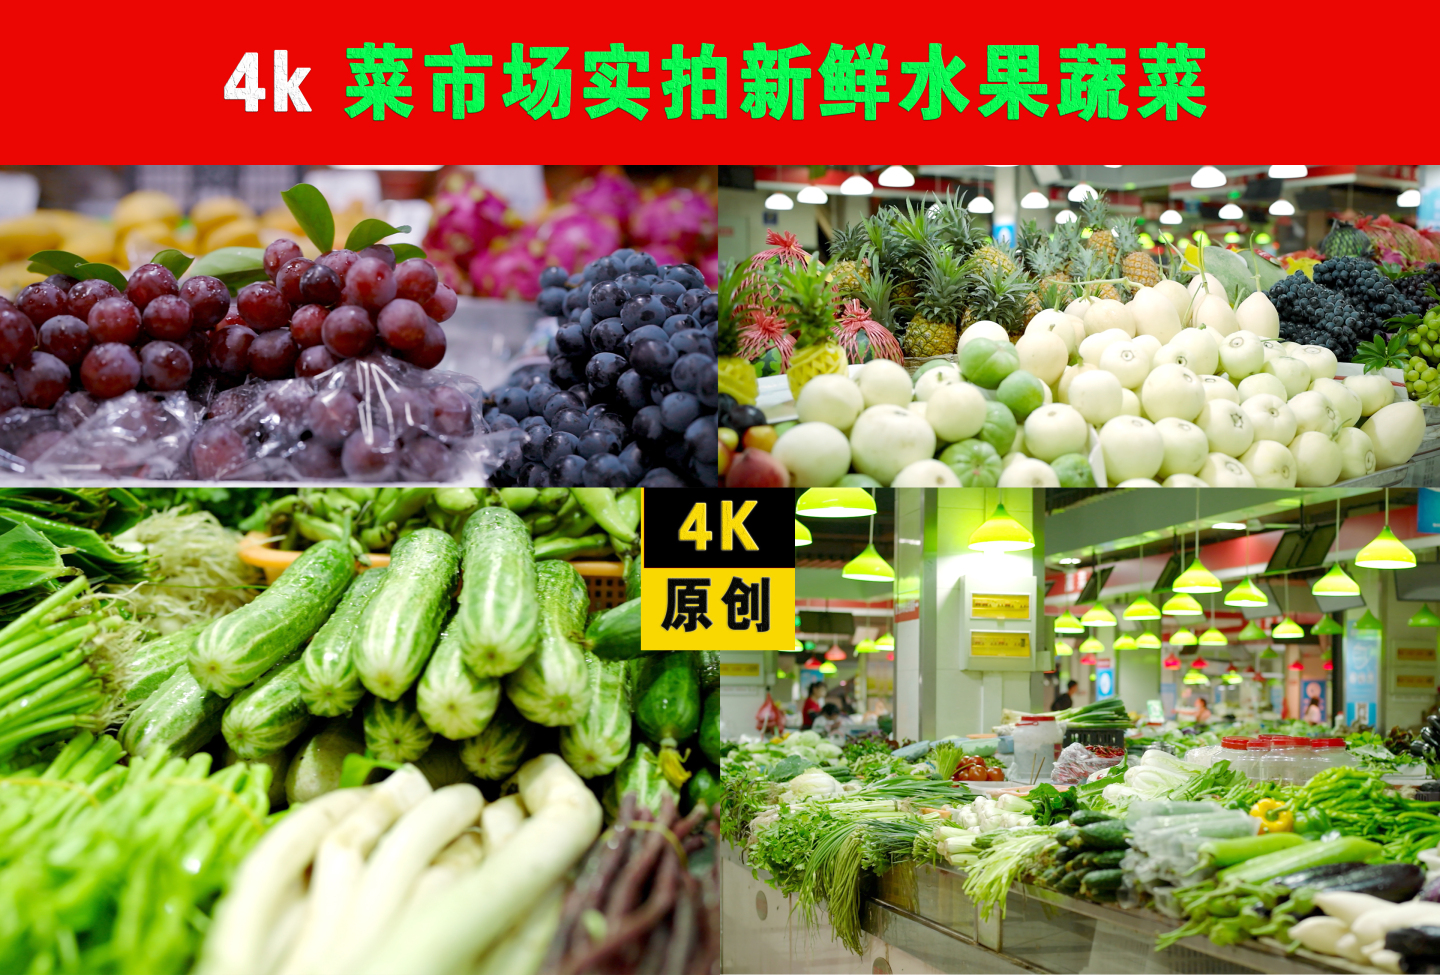 菜市场实拍新鲜水果蔬菜